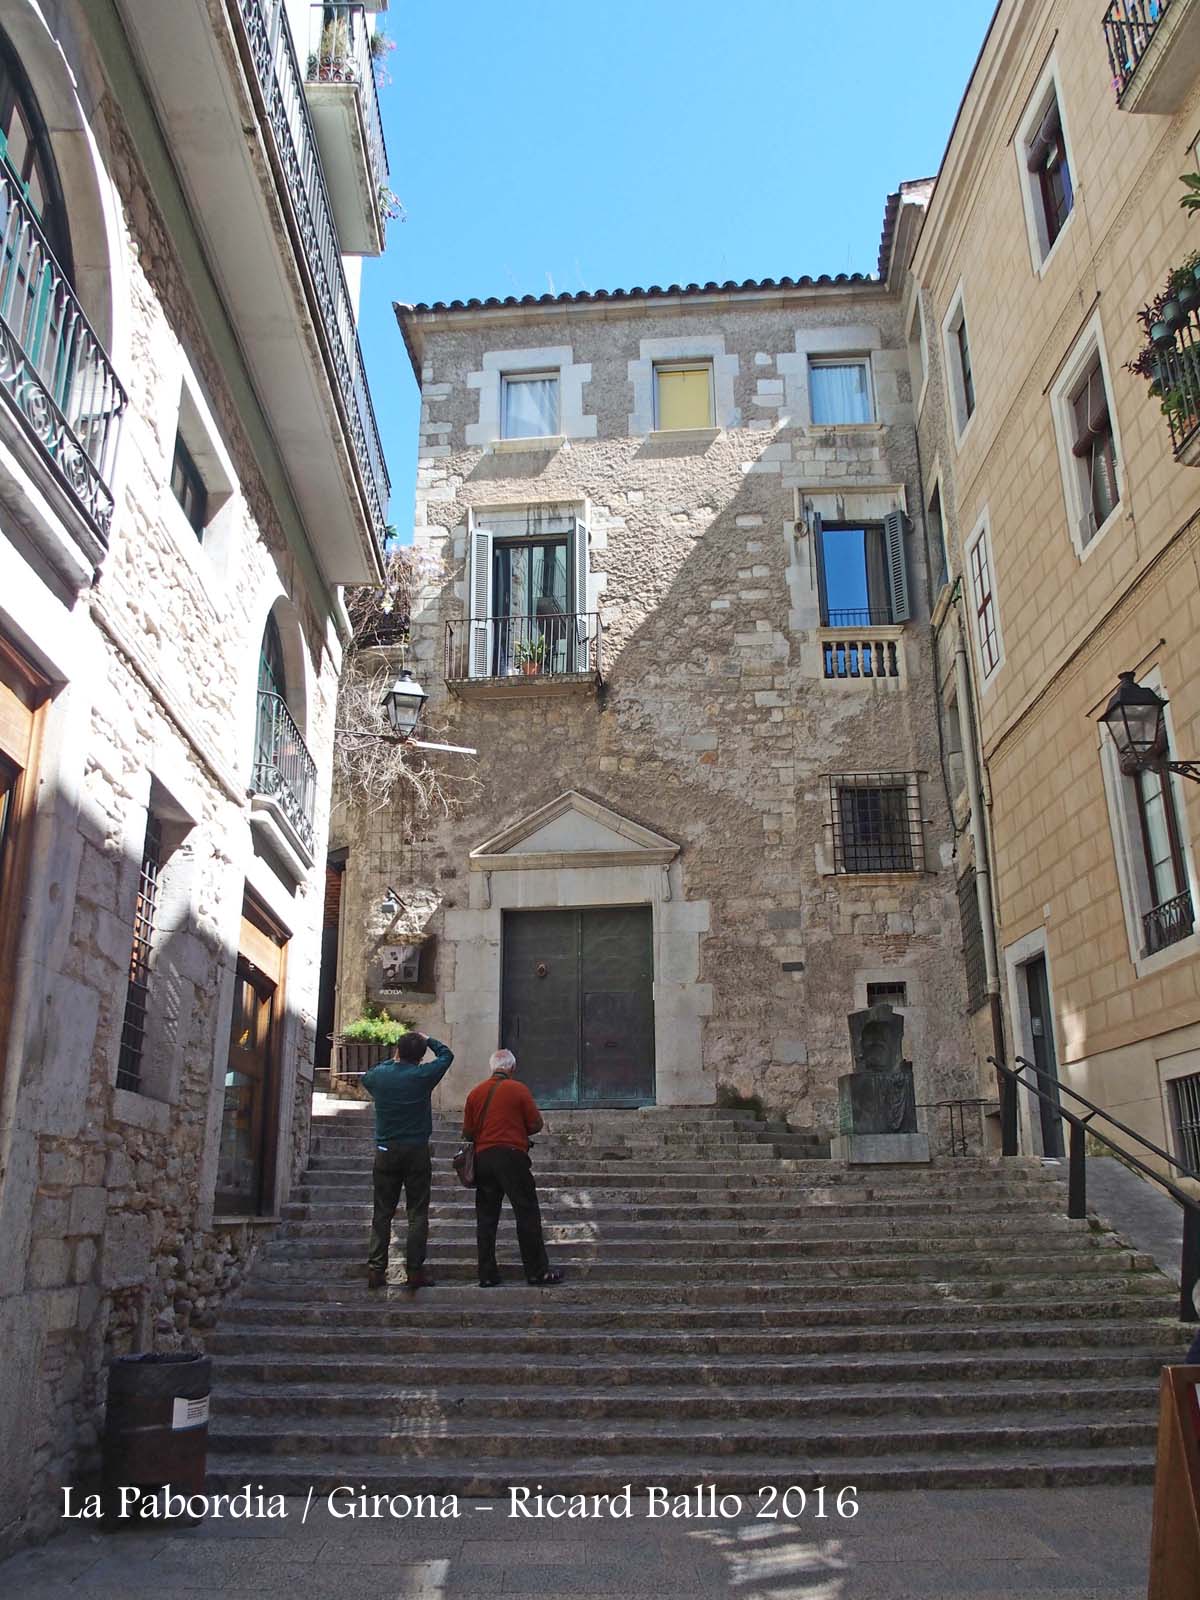 La Pabordia – Girona